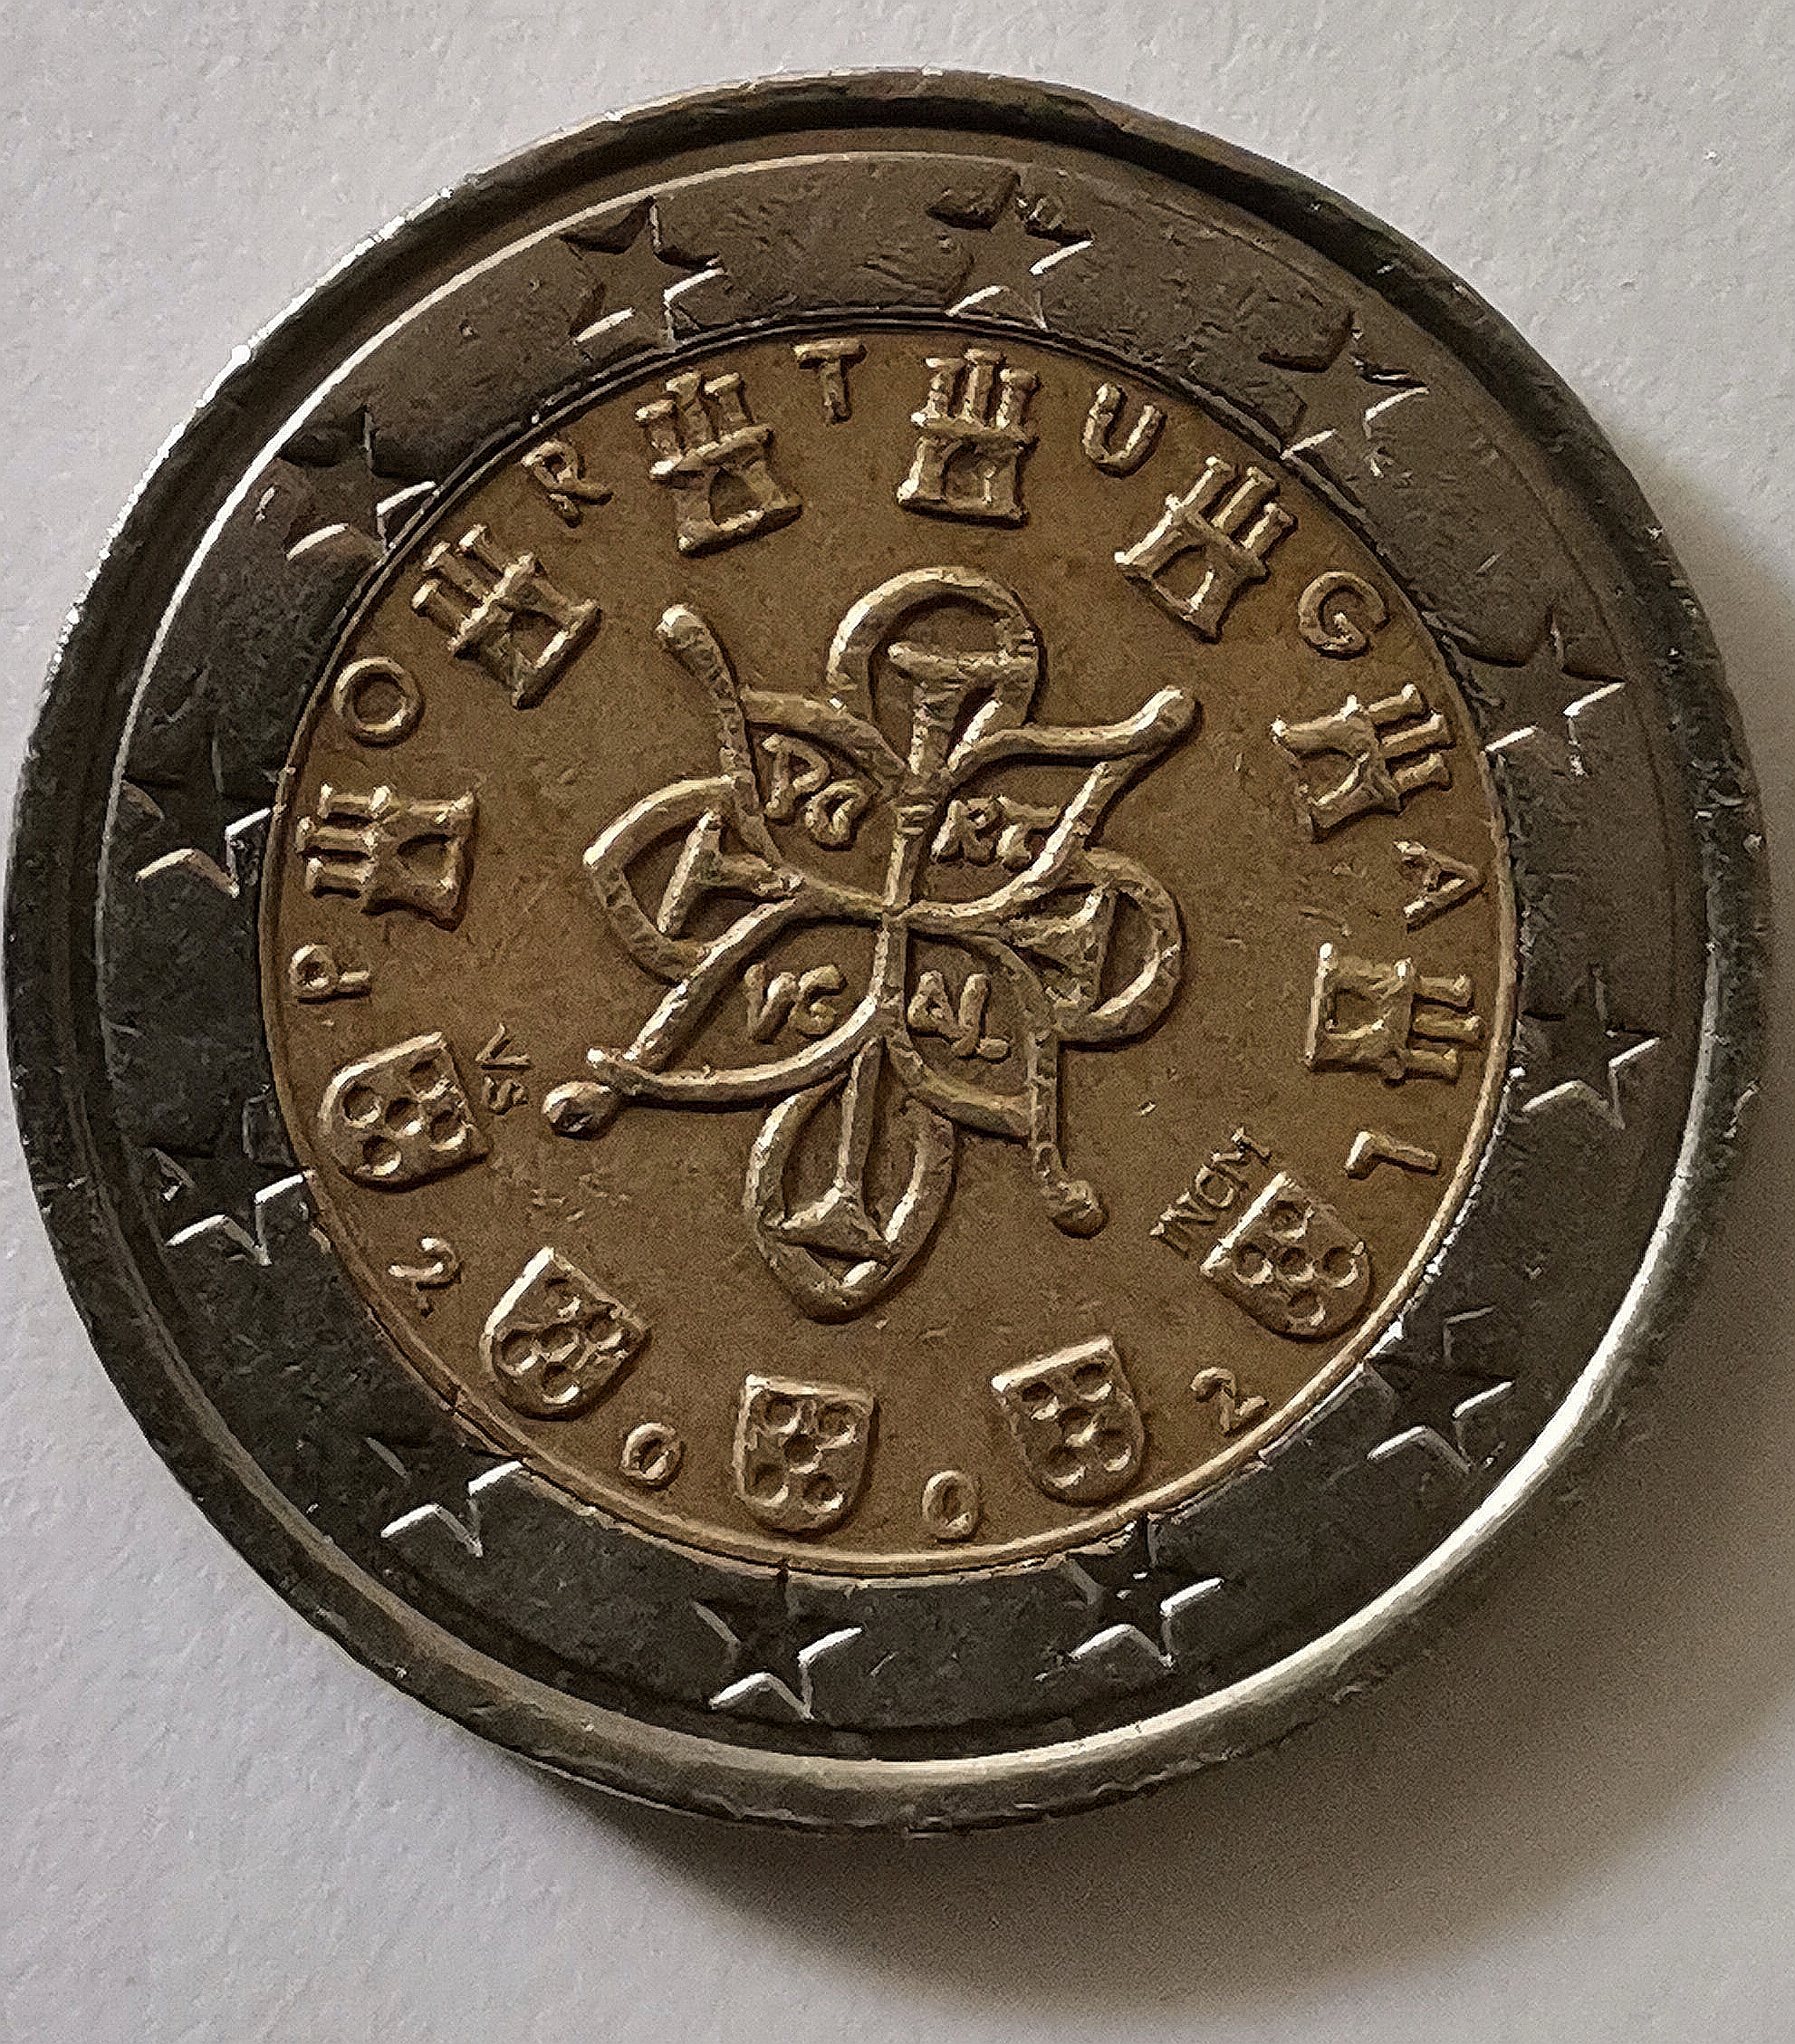 2 euro münze 2002 Portugal mit mehreren fehlprägungen